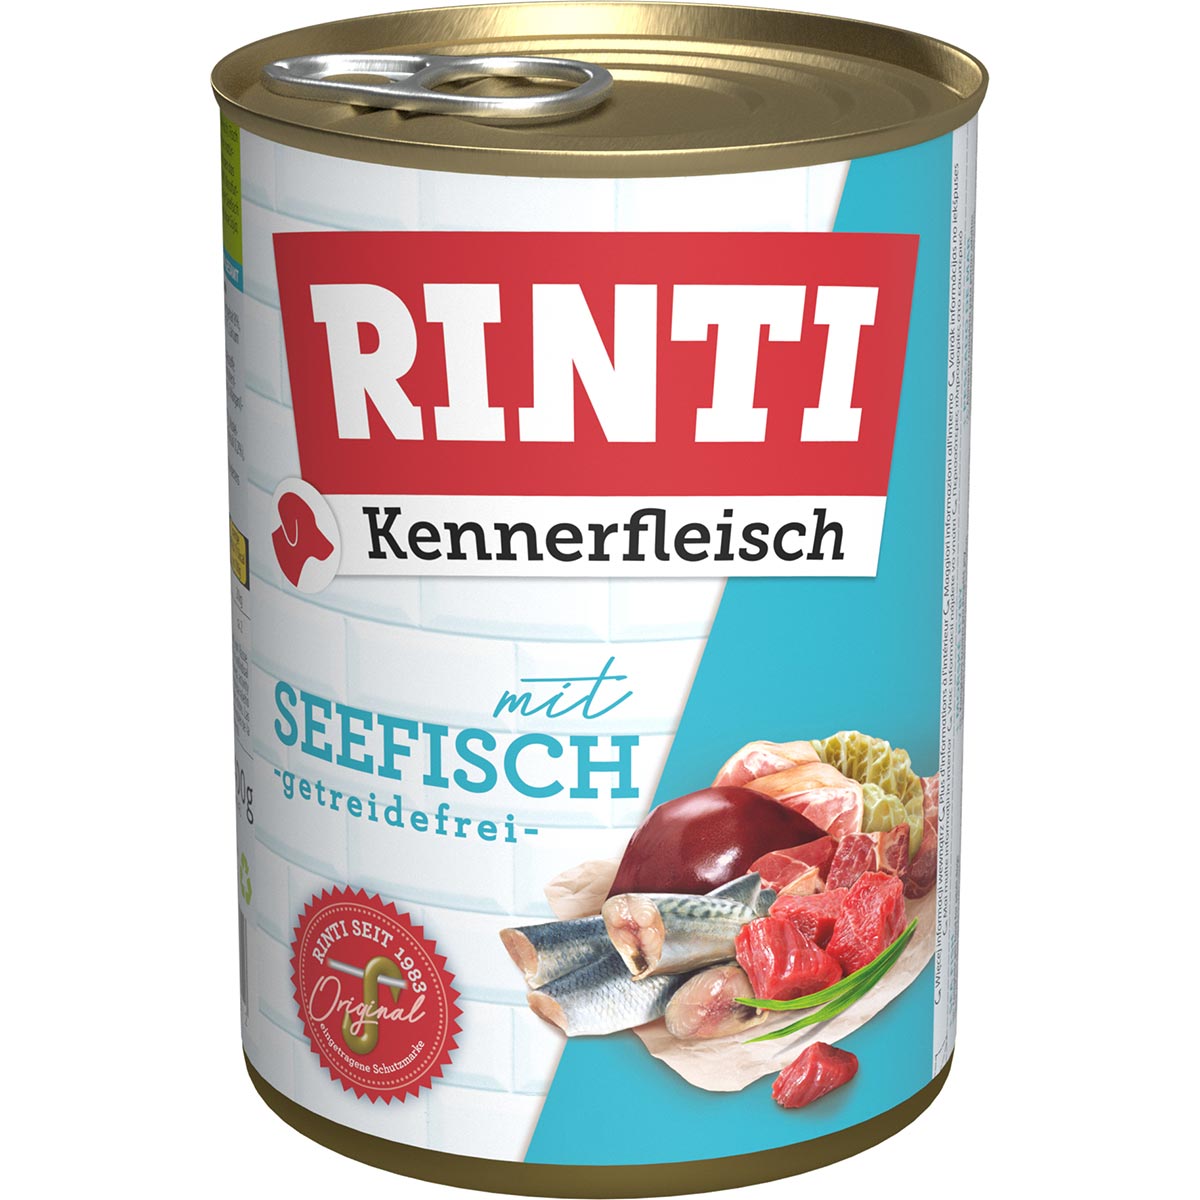 Rinti Kennerfleisch mit Seefisch 12x400g